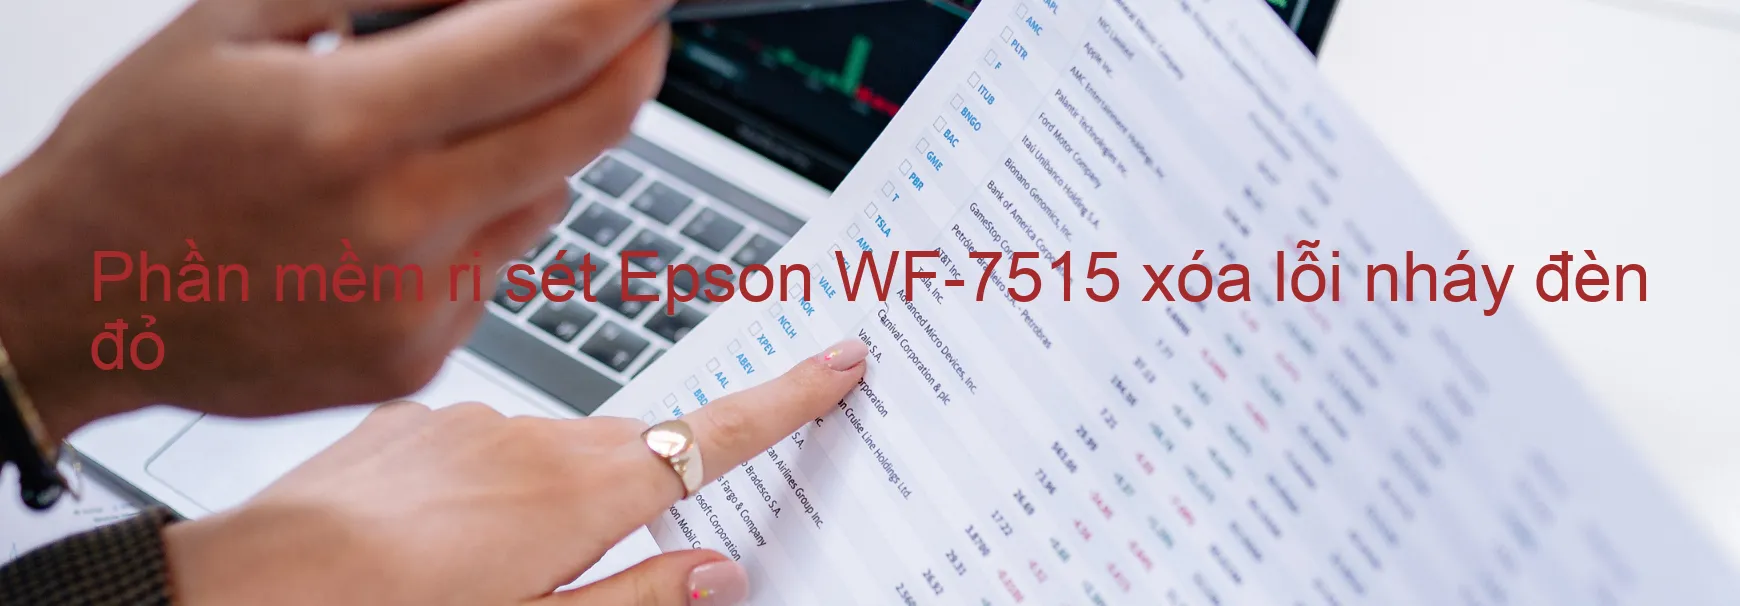 Phần mềm reset Epson WF-7515 xóa lỗi nháy đèn đỏ